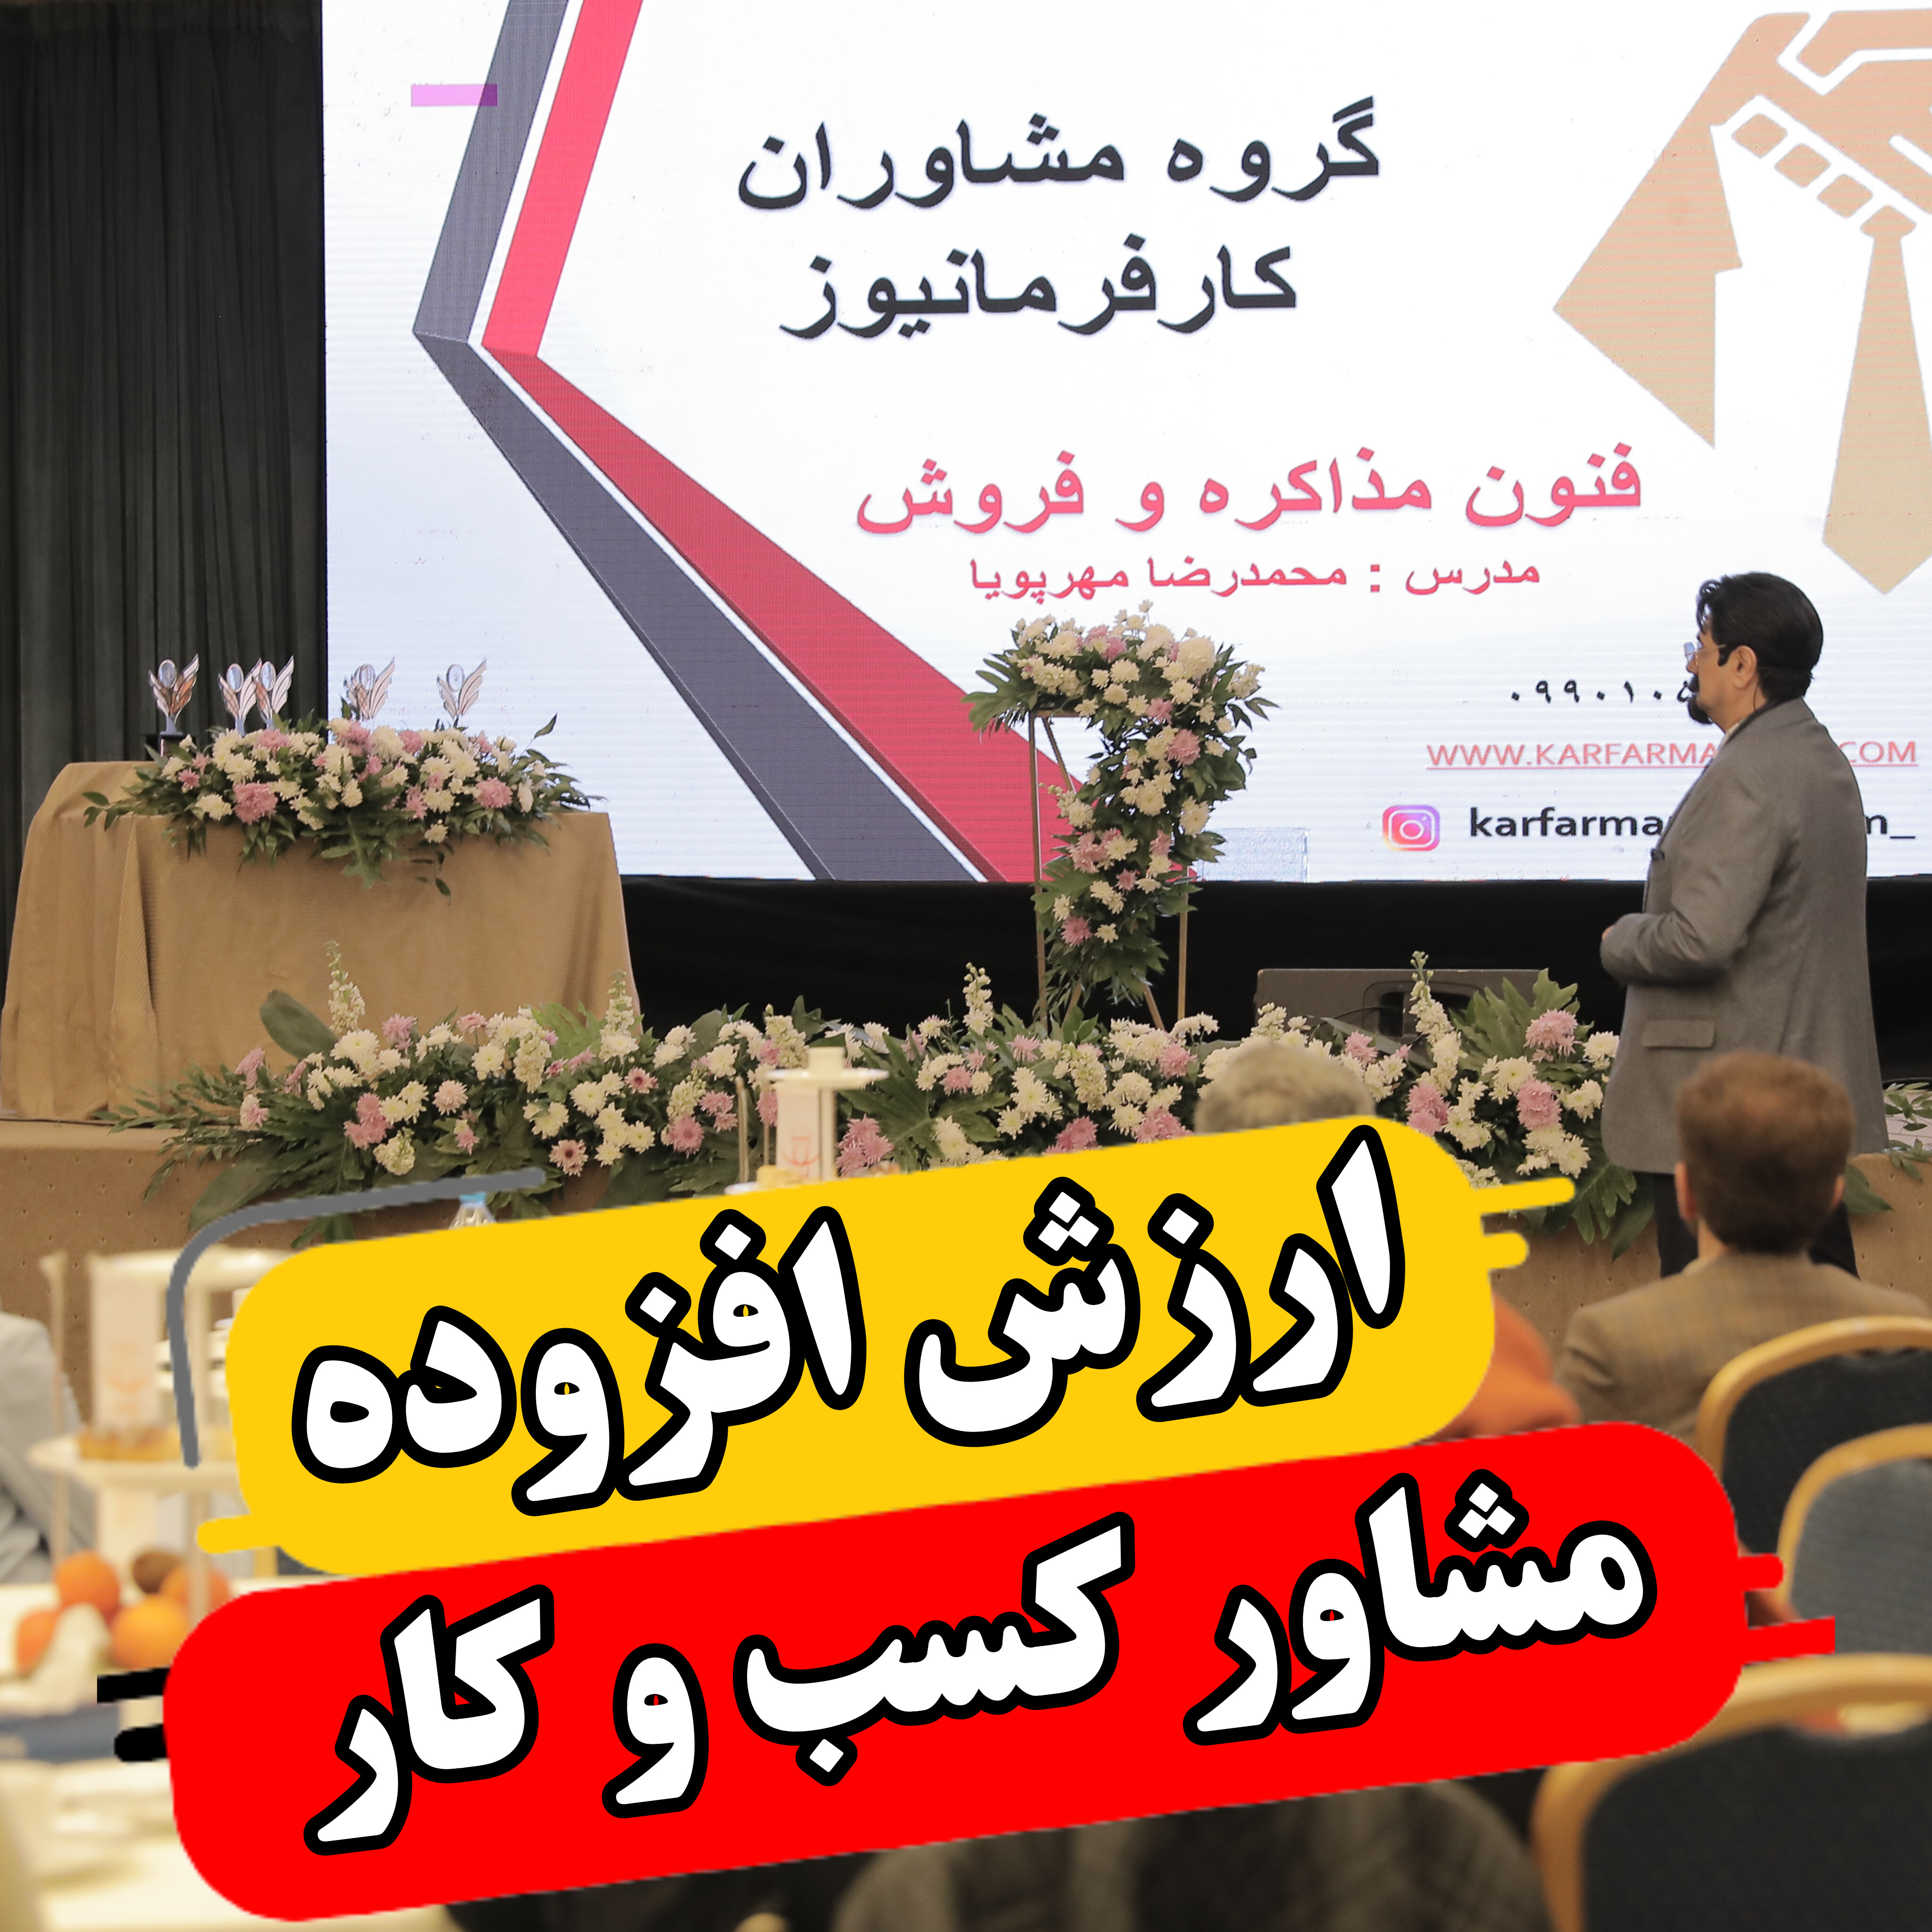 بهترین مشاور کسب و کار ایران